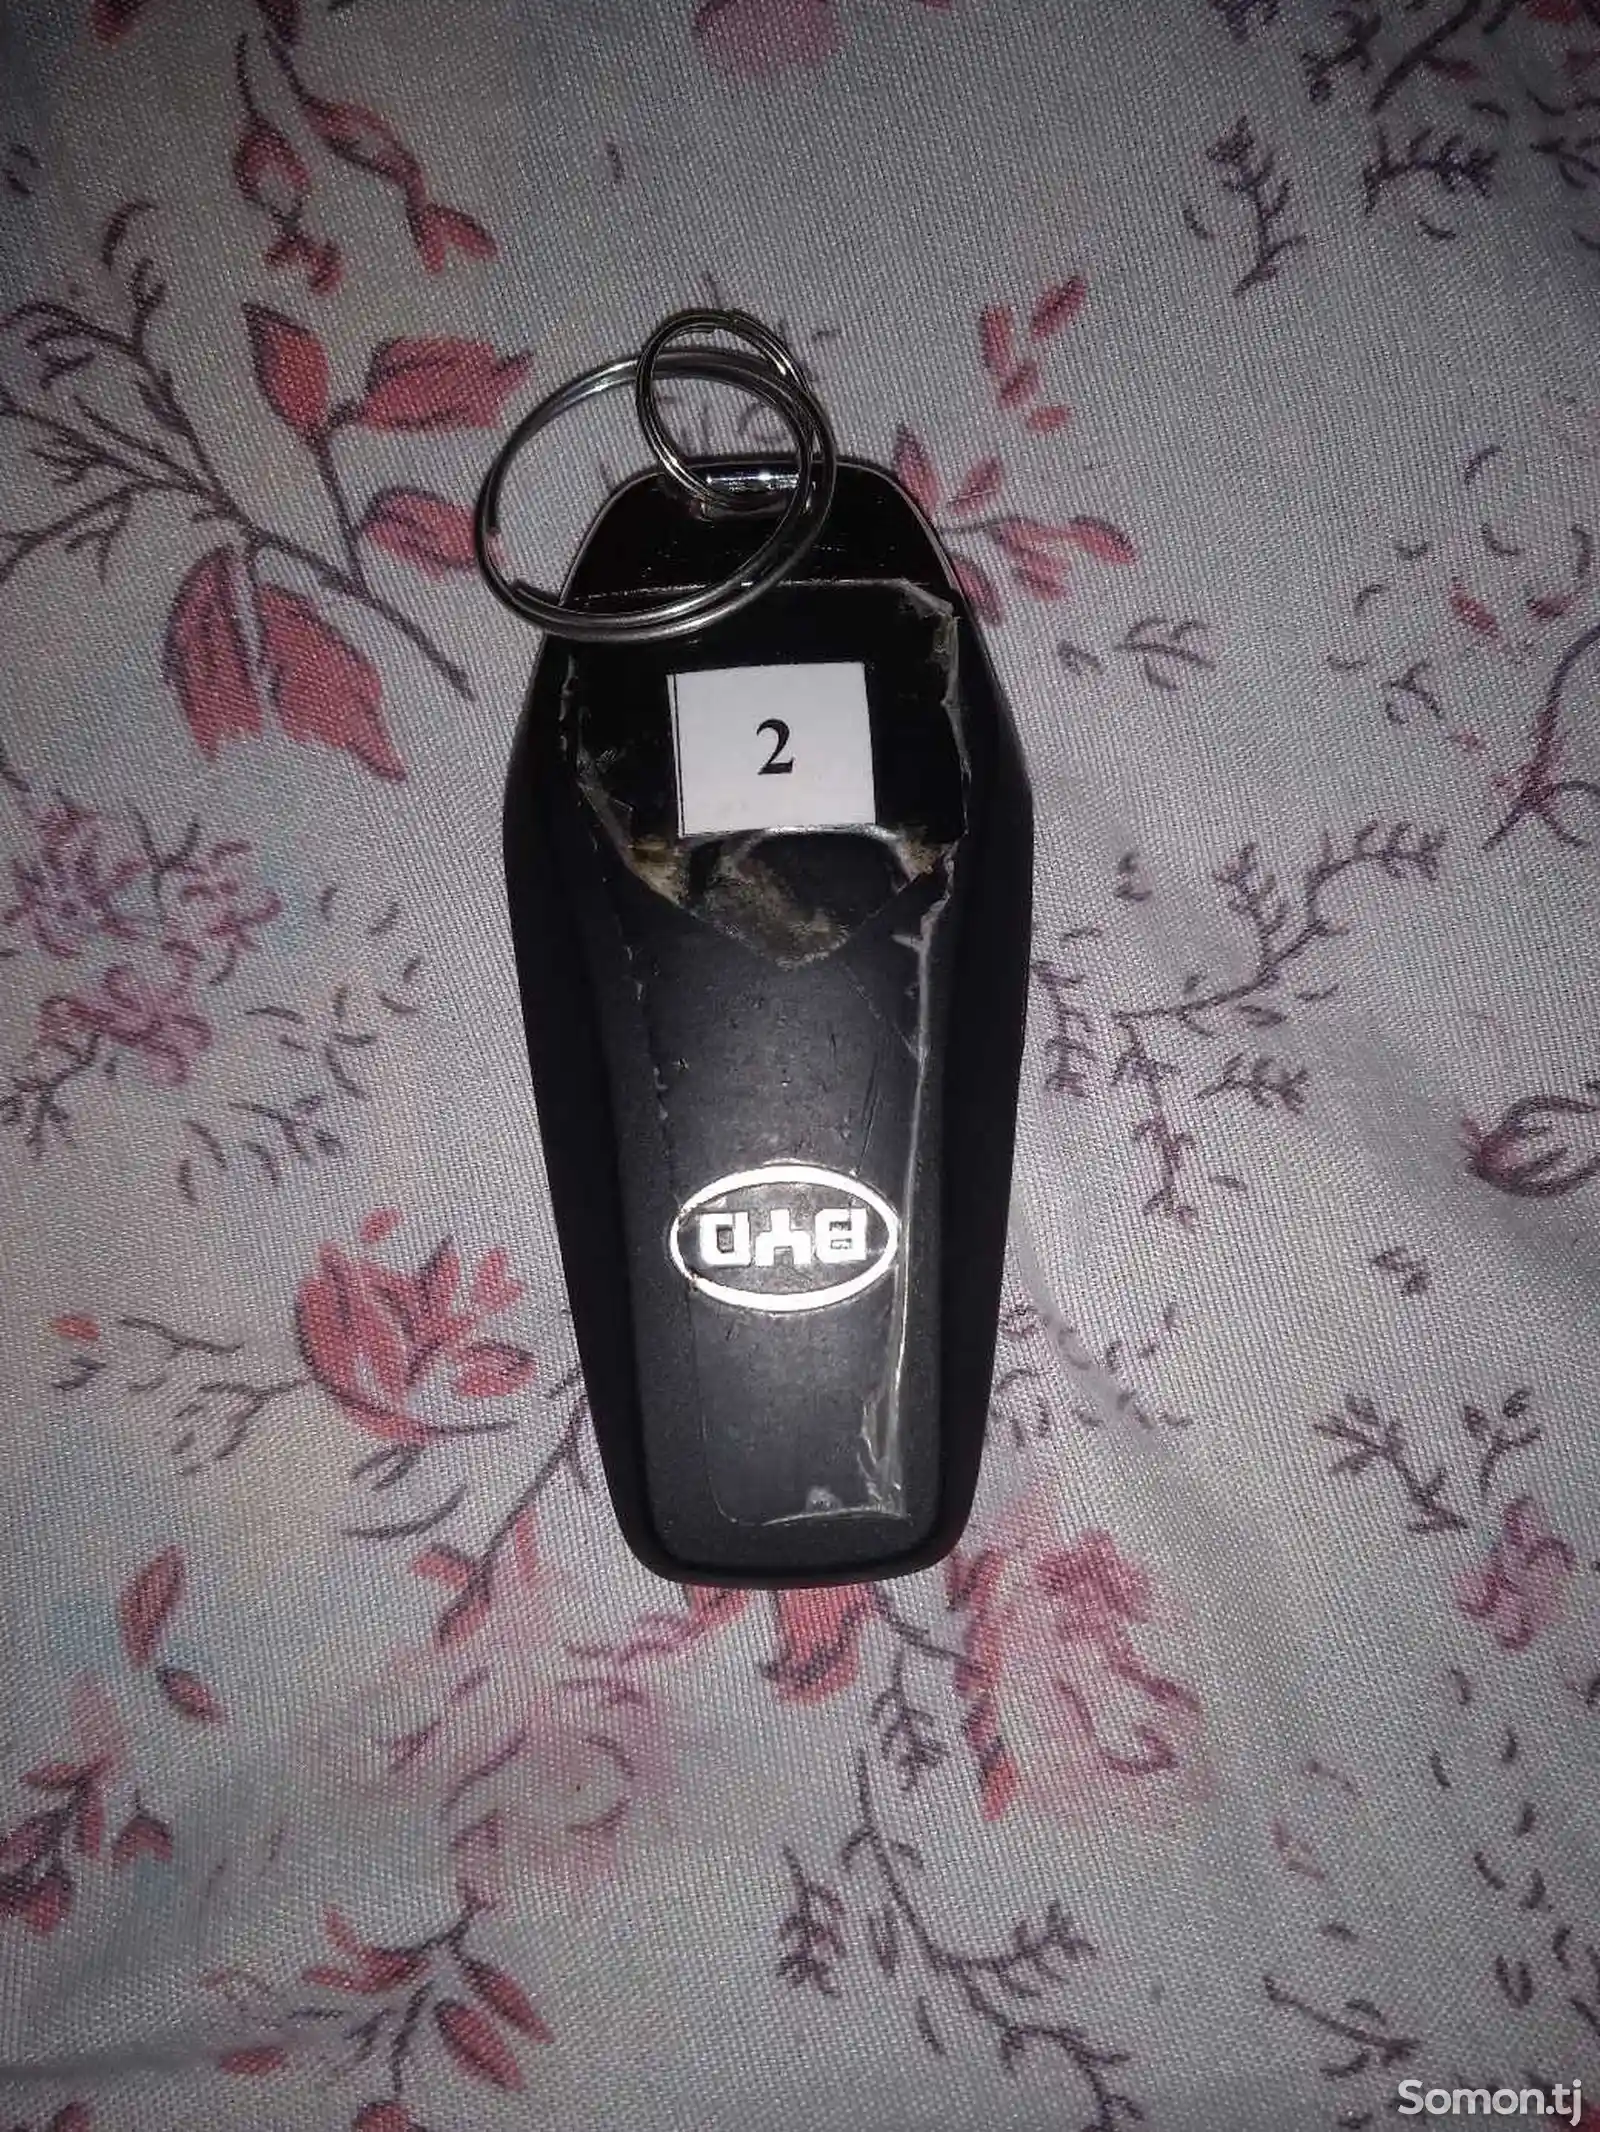 Ключ от авто-2